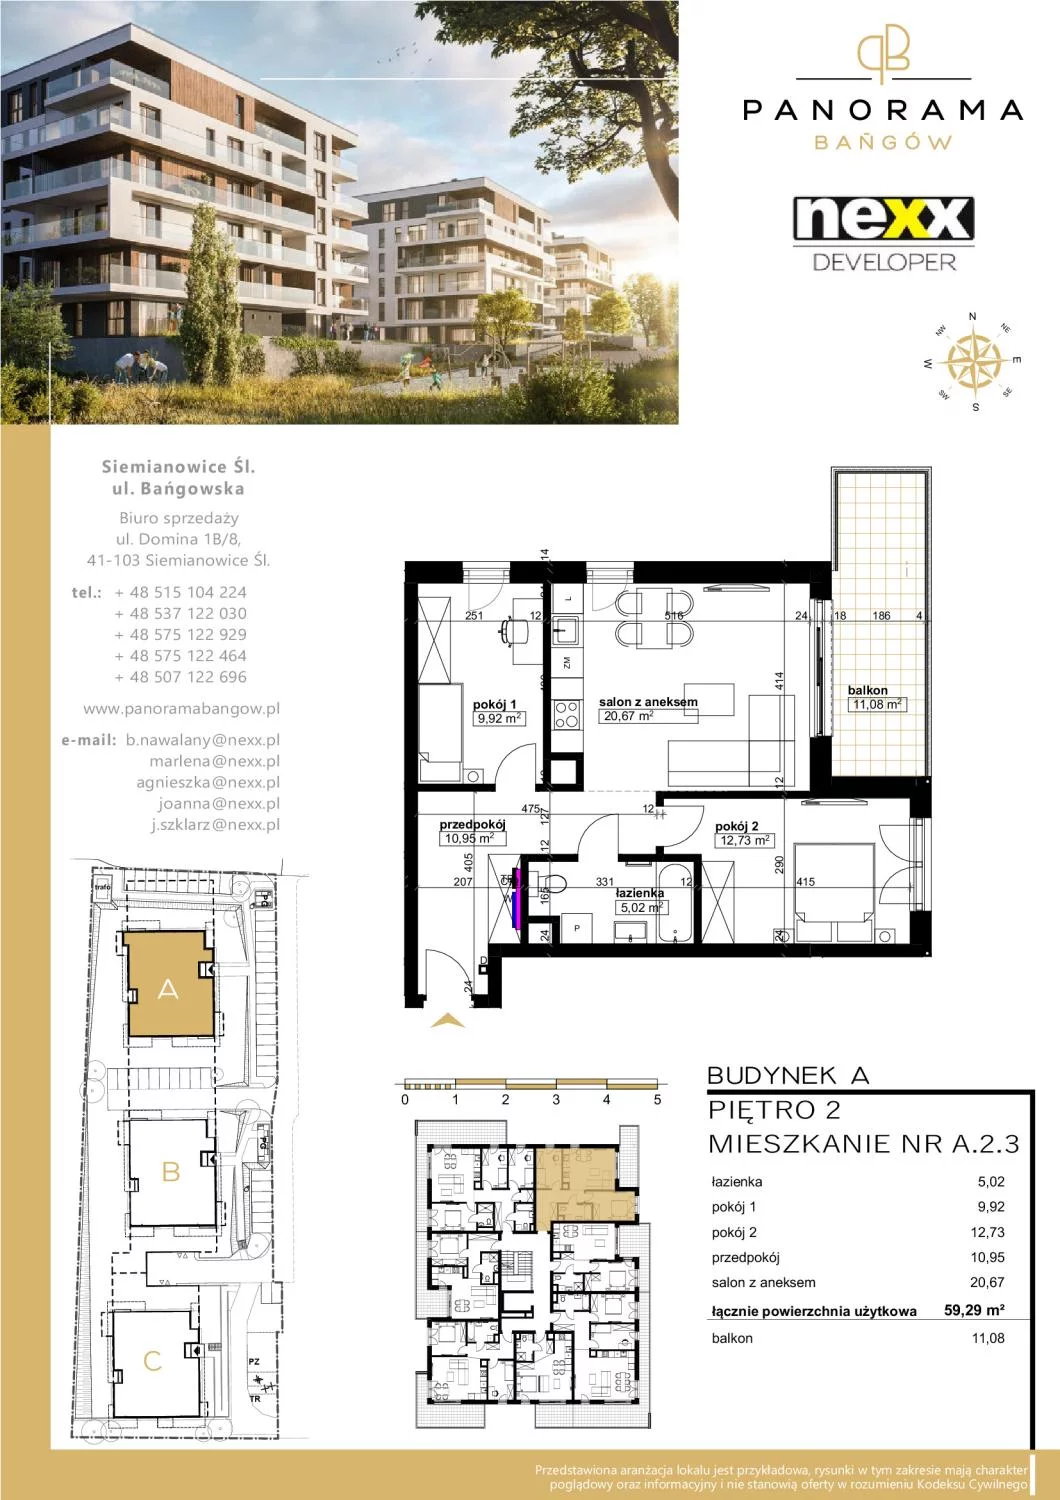 Mieszkanie 59,29 m², piętro 2, oferta nr A 2.3, Panorama Bańgów, Siemianowice Śląskie, Bańgów, ul. Bańgowska